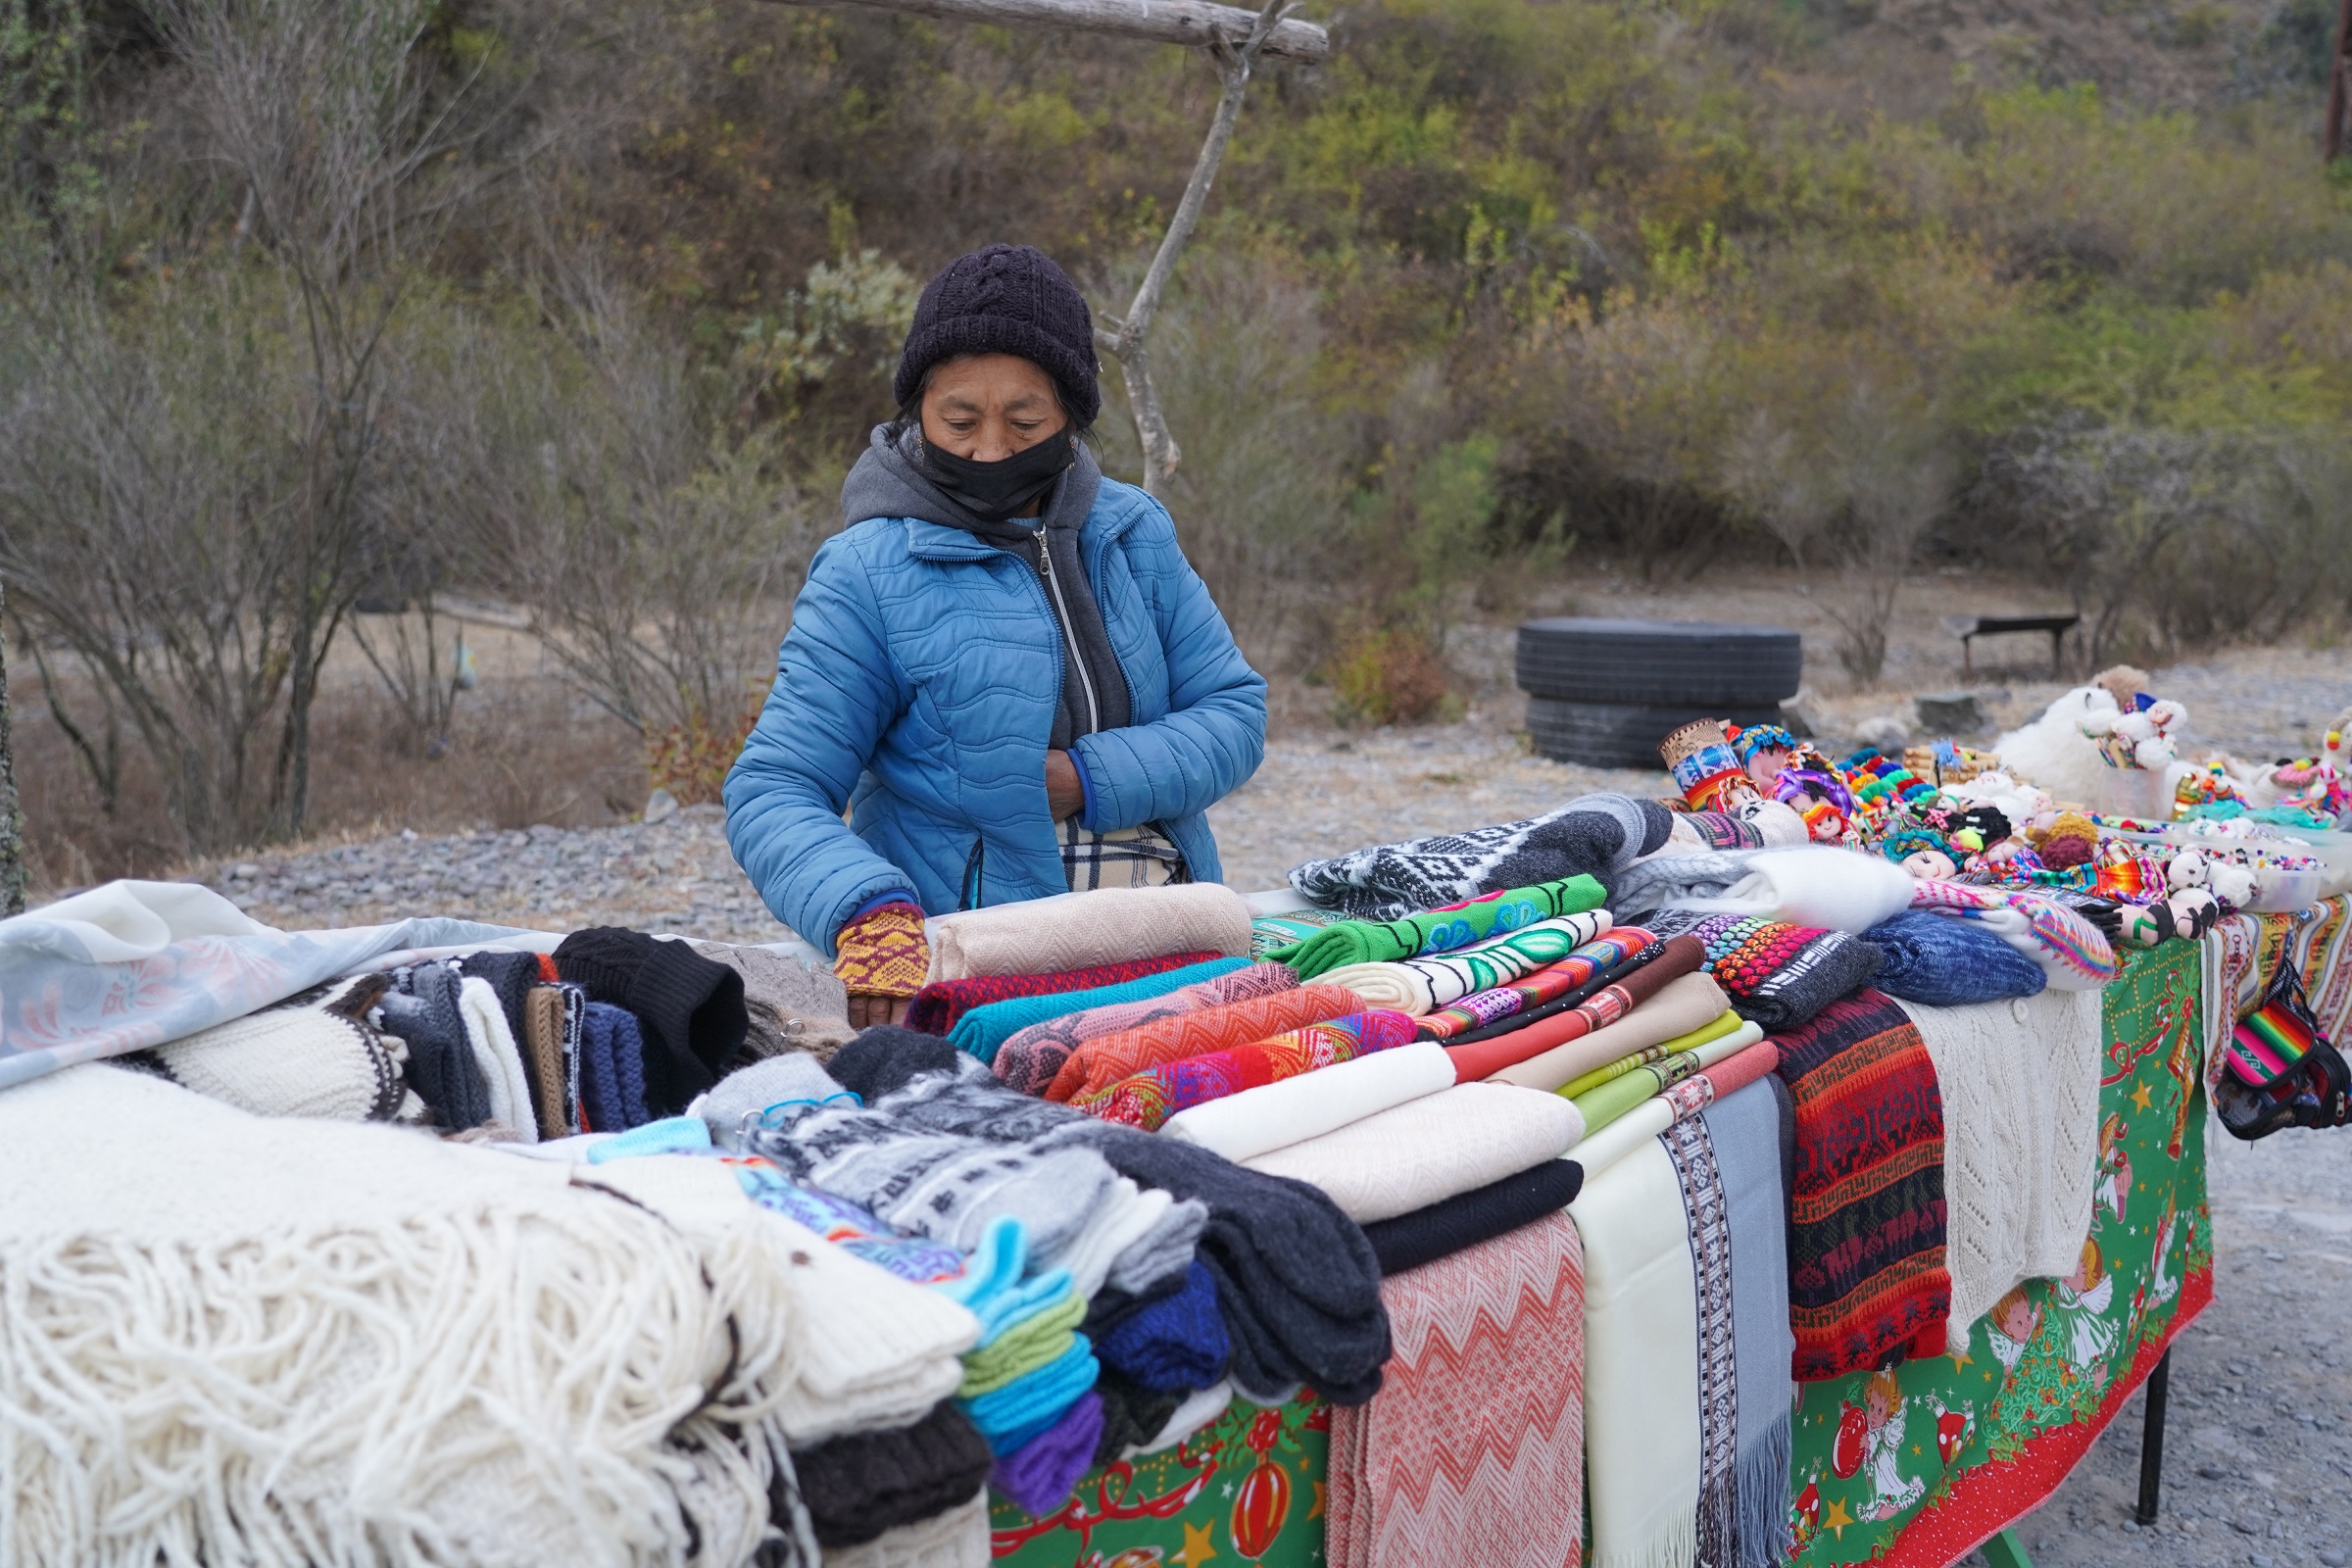 O comércio de artigos artesanais é forte na região. Foto: Divulgação/Cesar Valdivieso